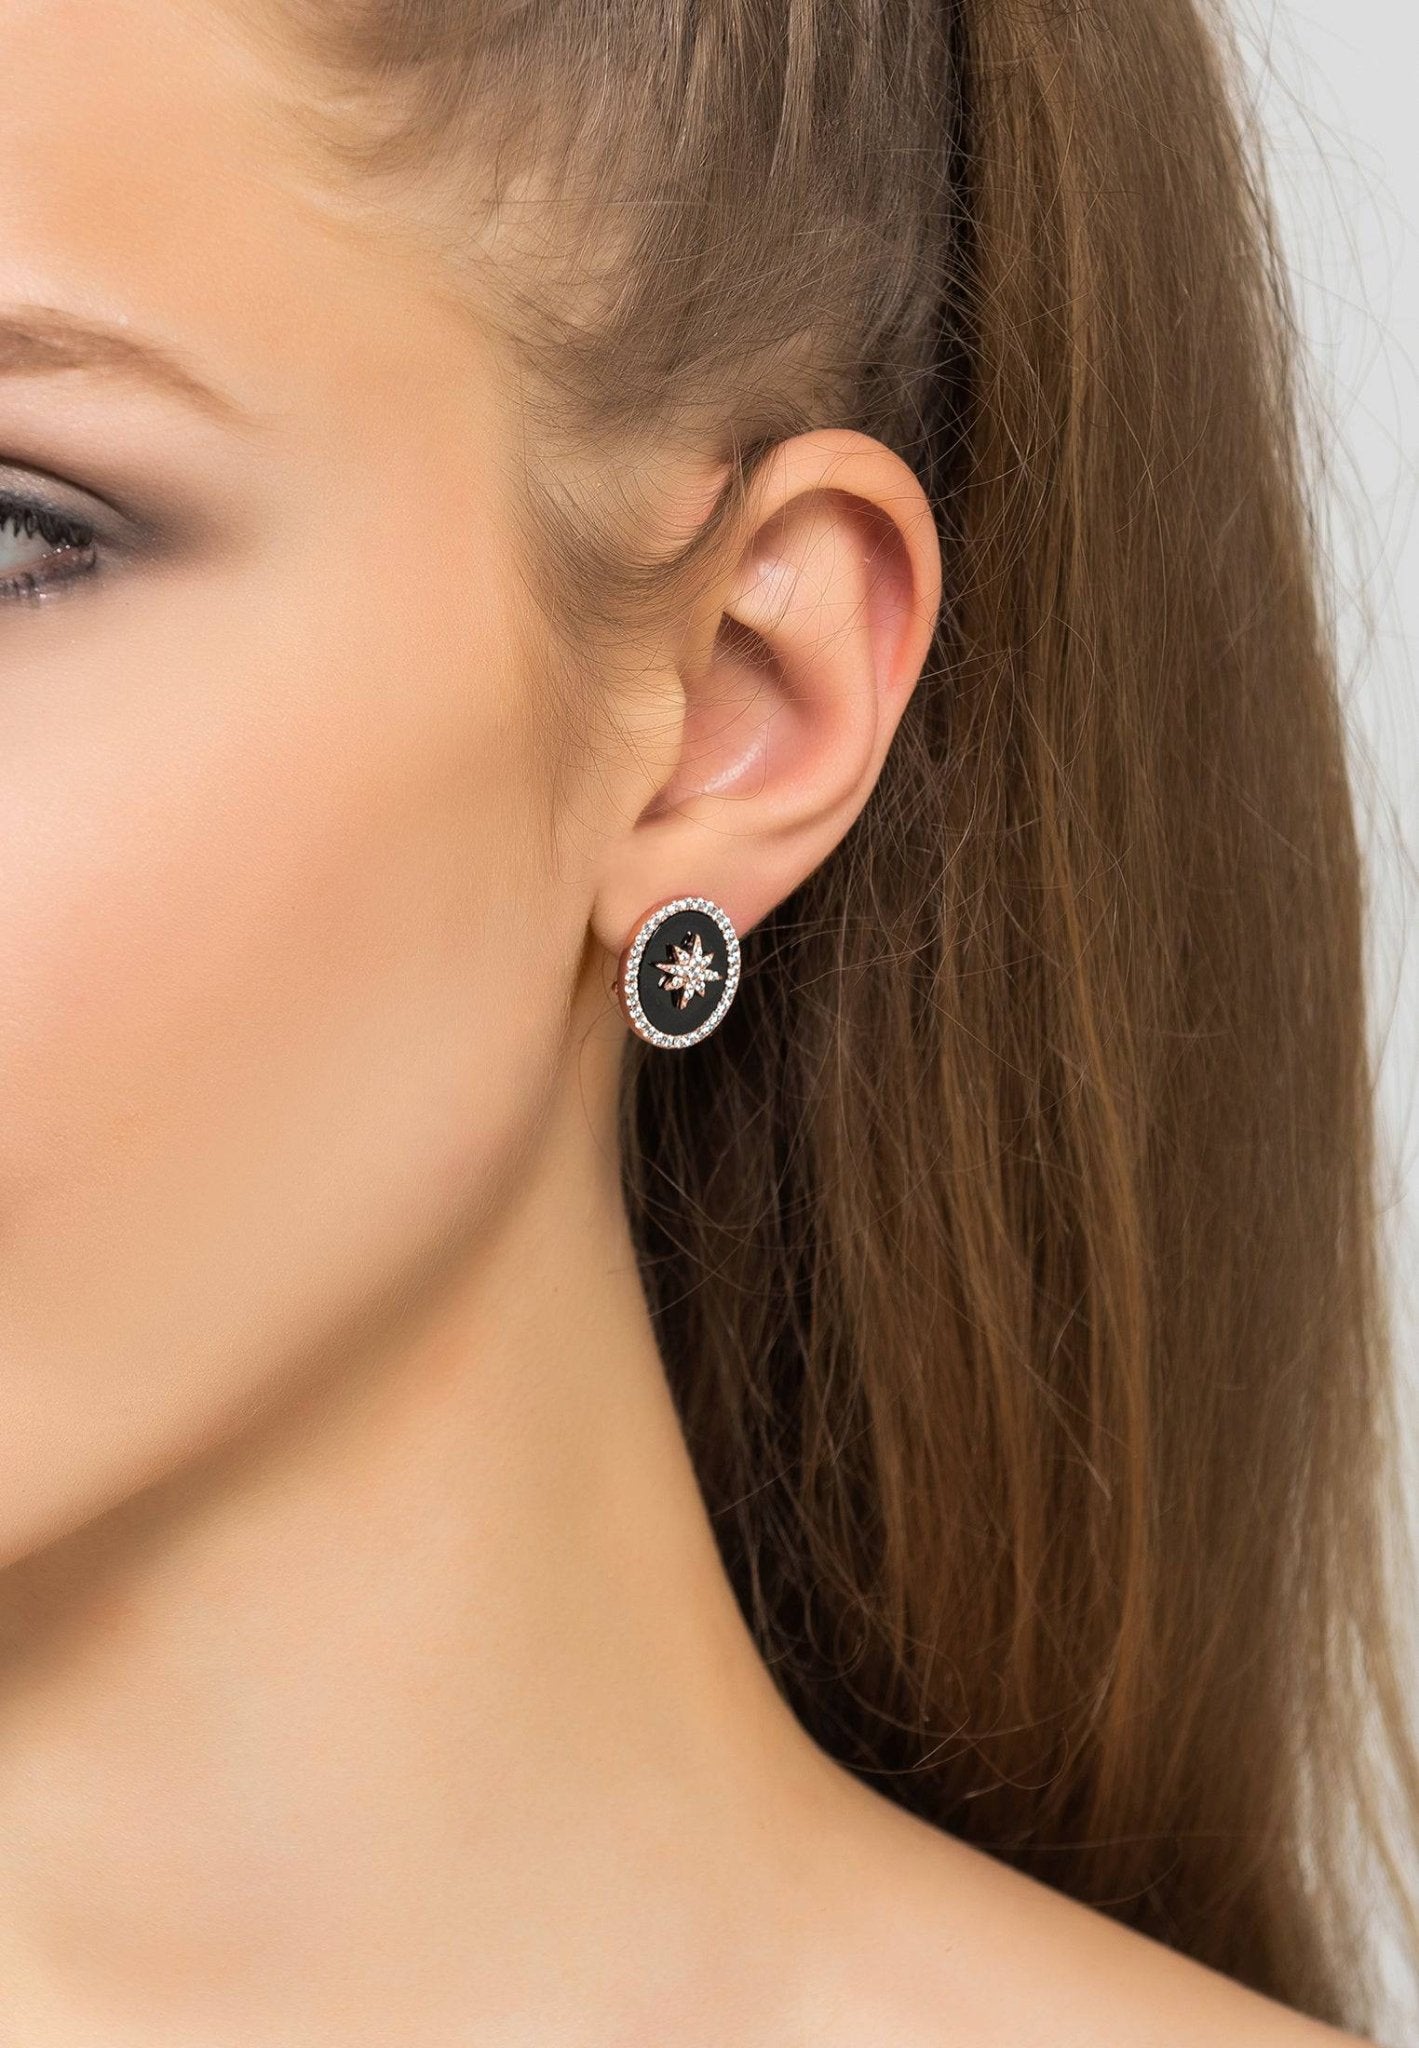 Starburst Oval Stud Earring Black Onyx Rosegold - LATELITA Earrings